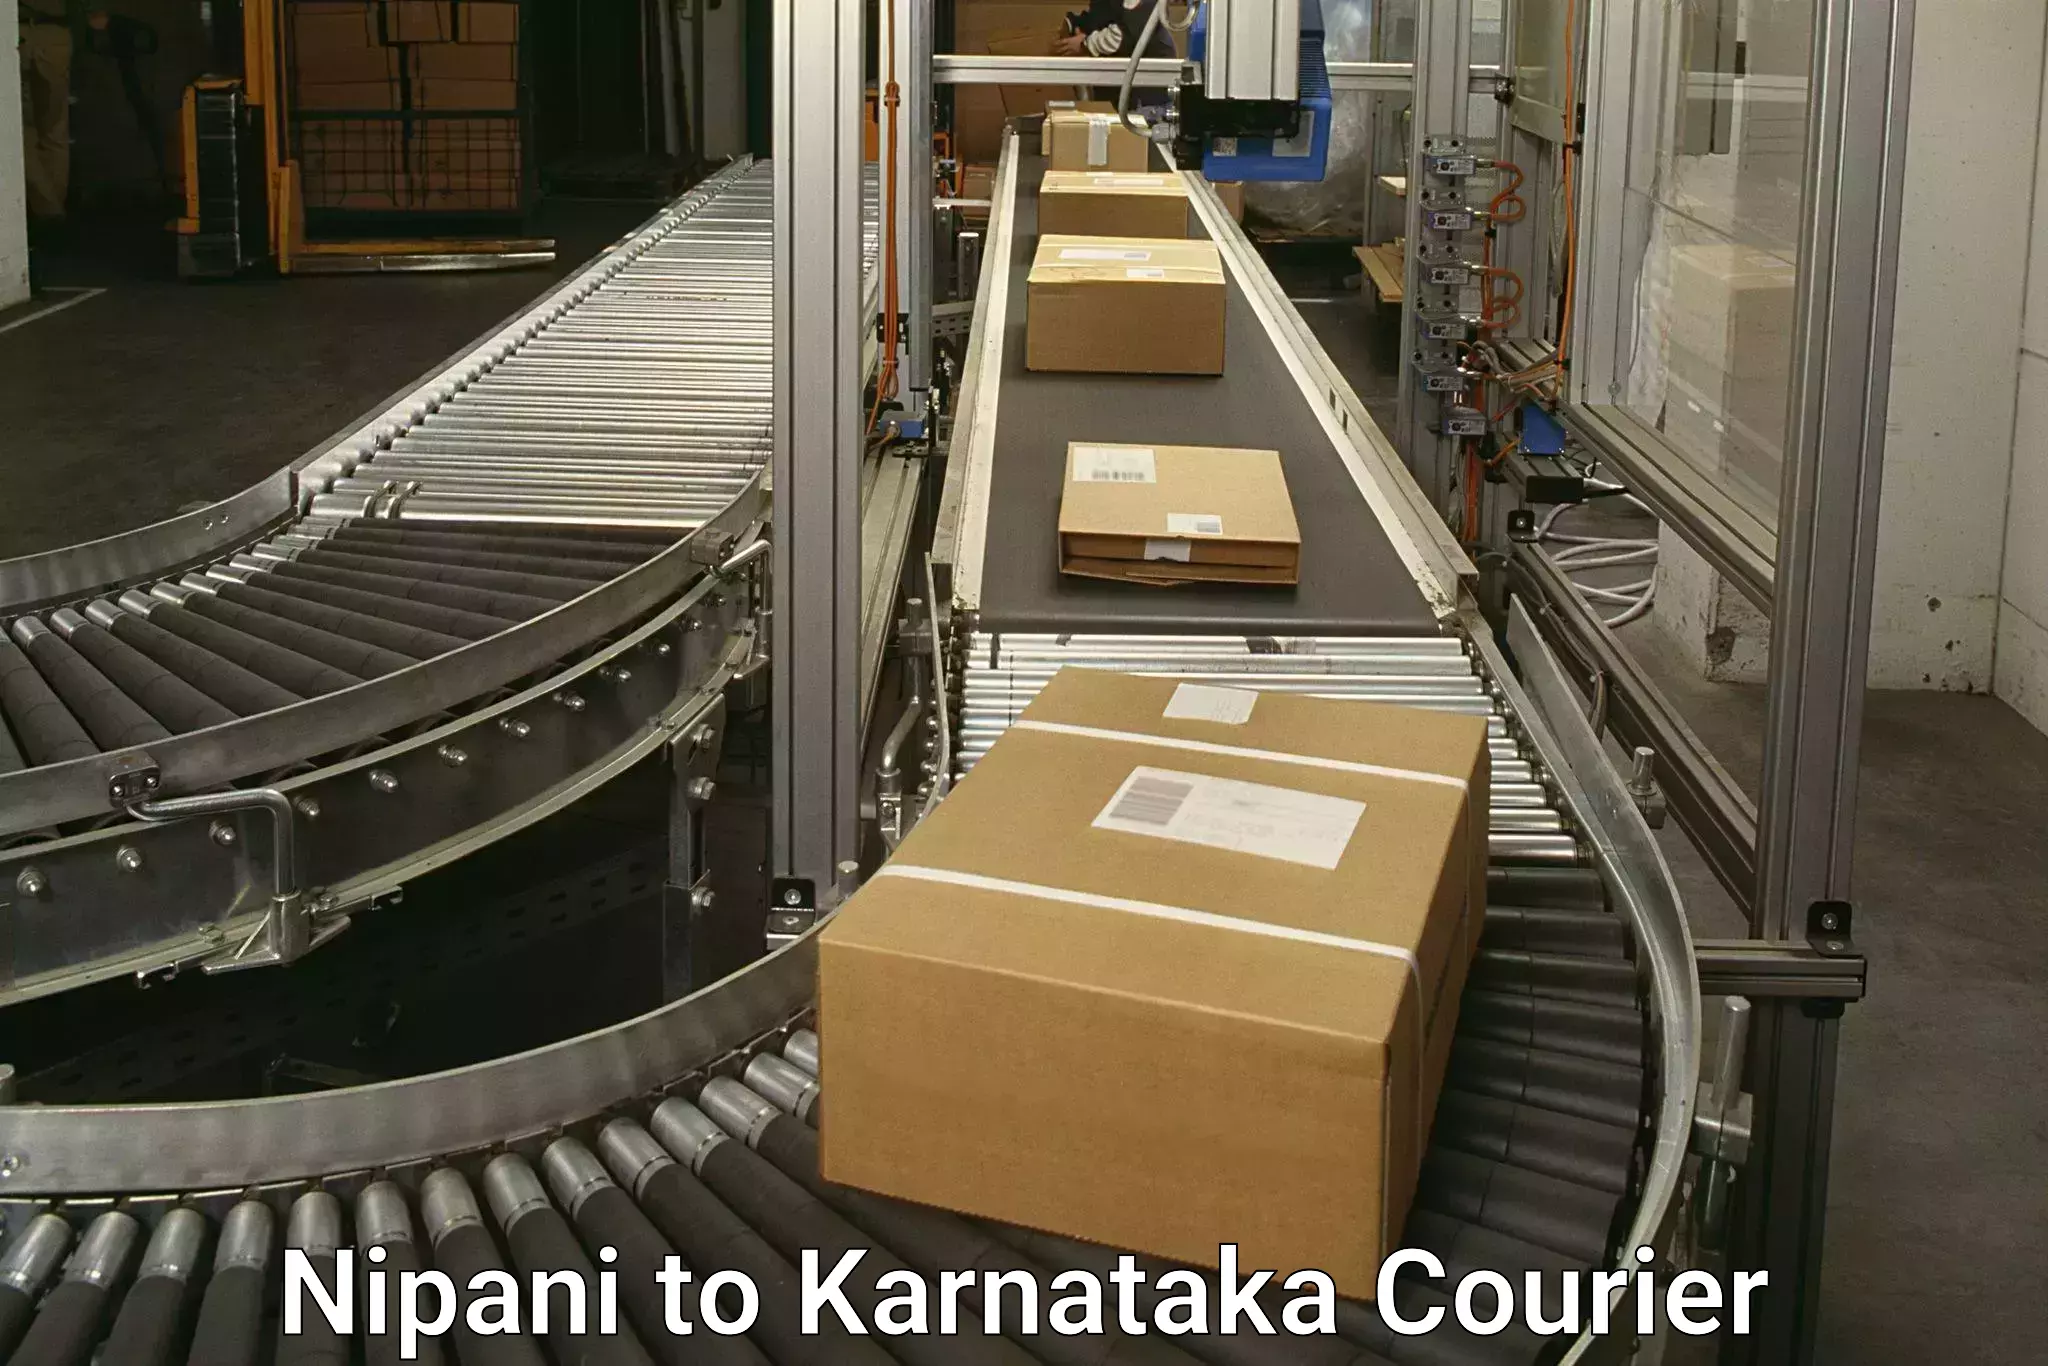 Pharmaceutical courier Nipani to Karnataka